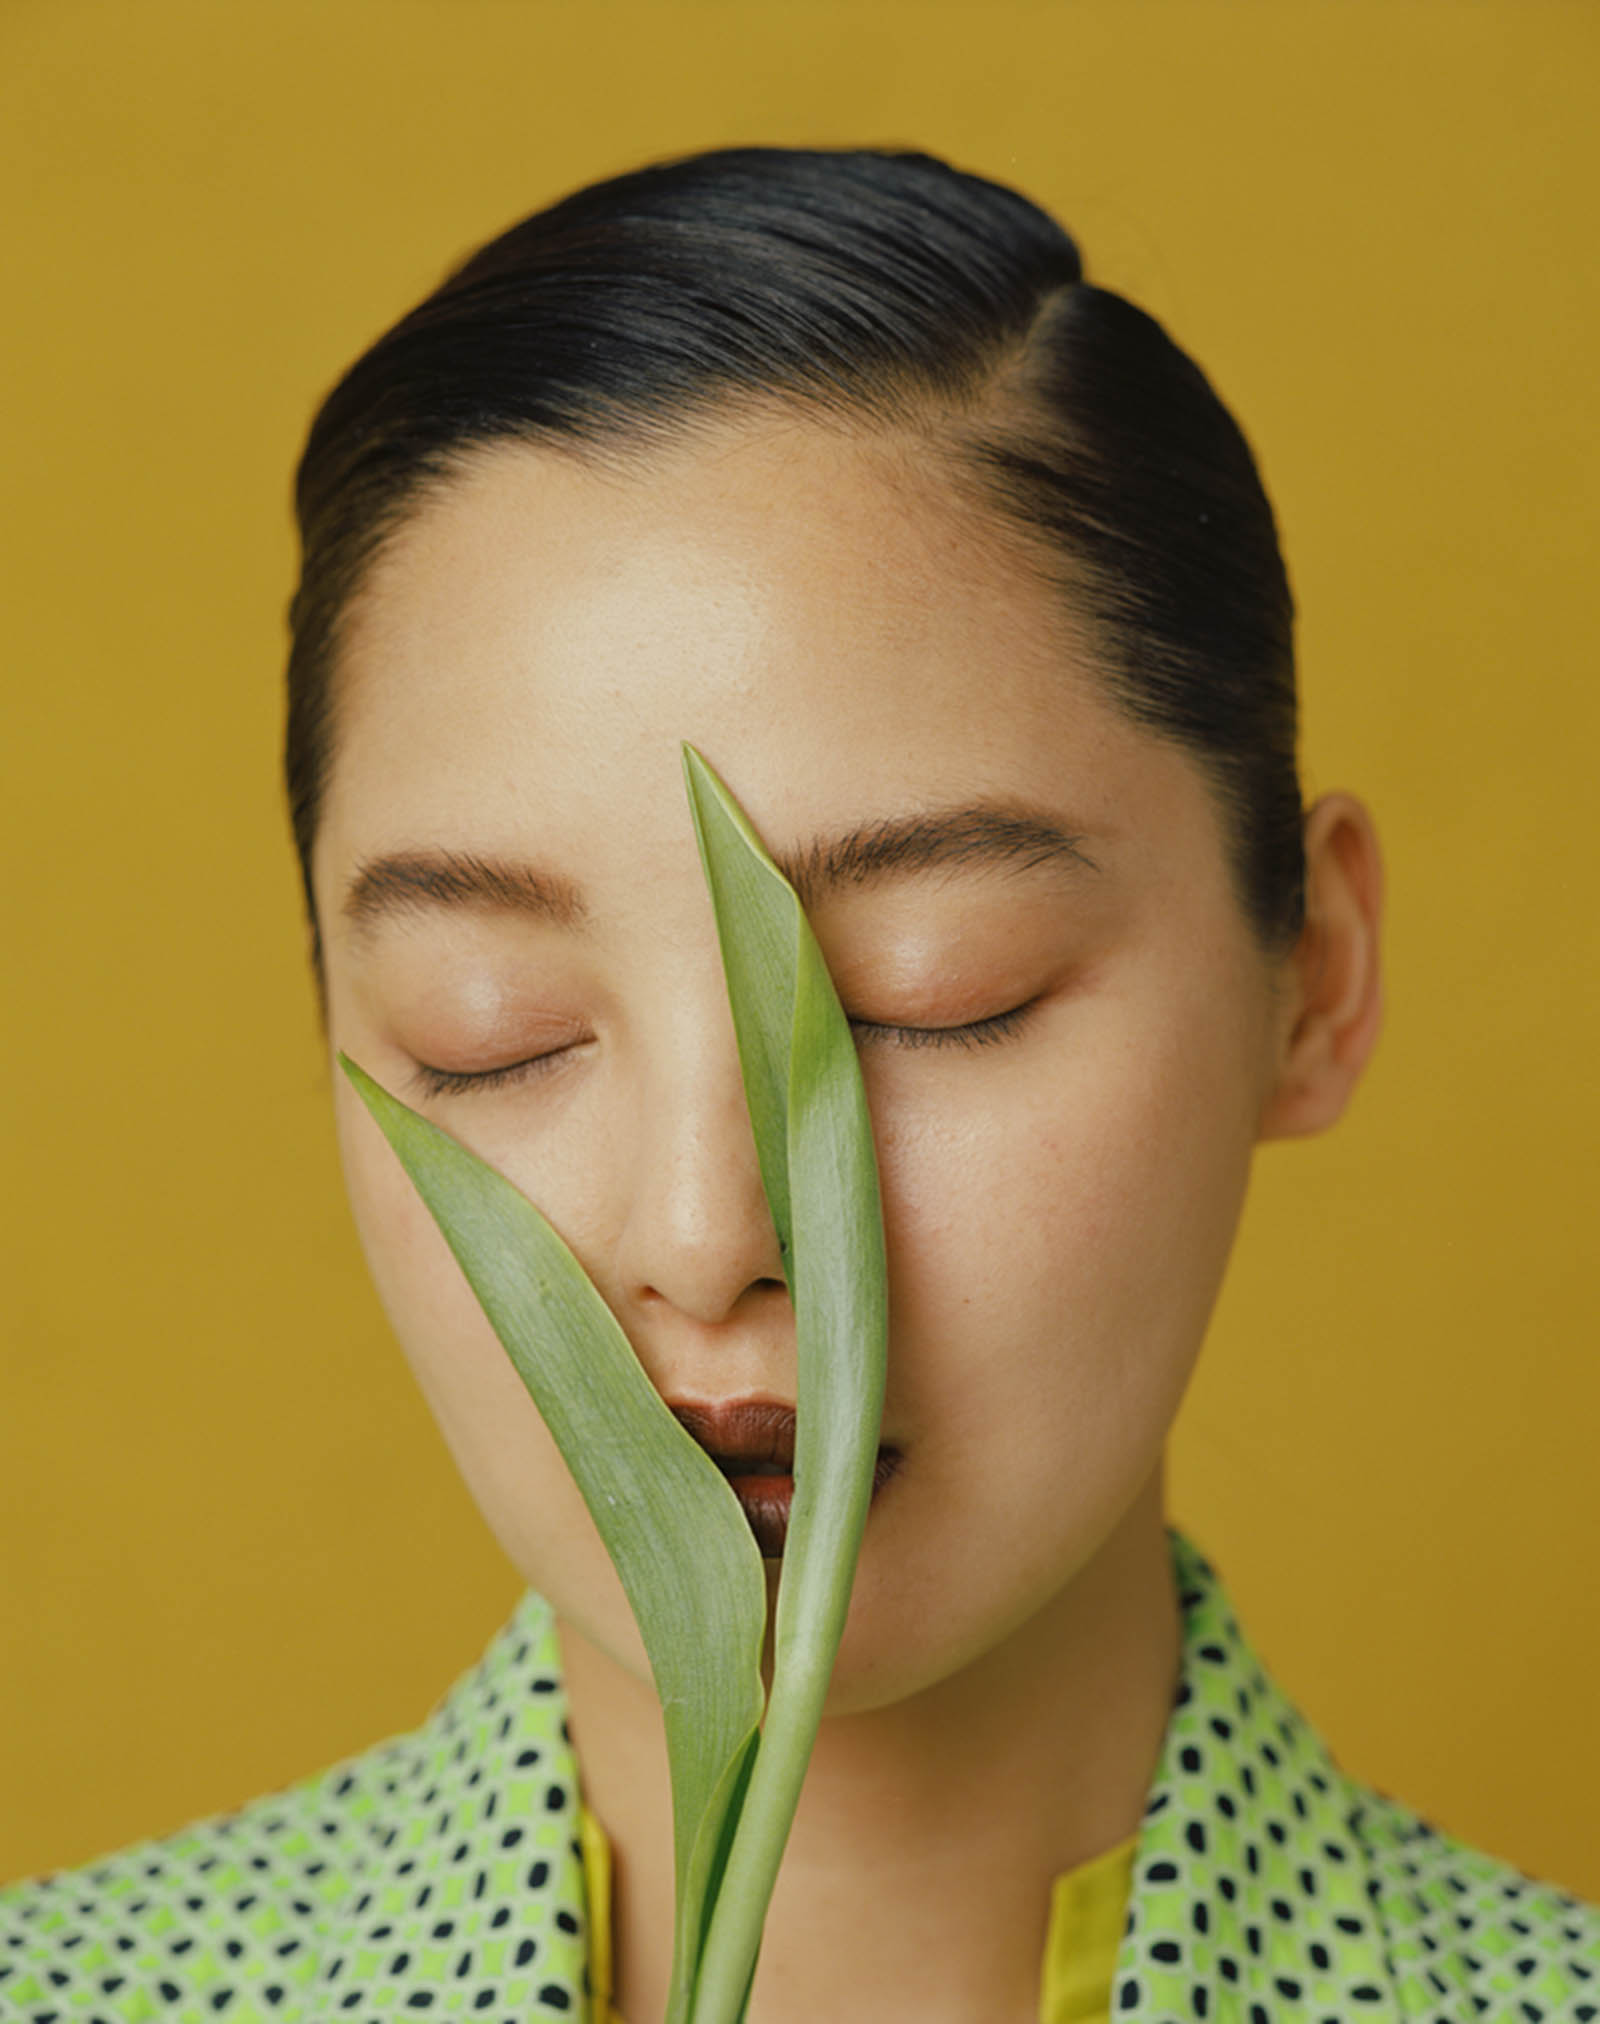 Leslie Zhang celebra la bellezza cinese nelle sue fotografie | Collater.al 5